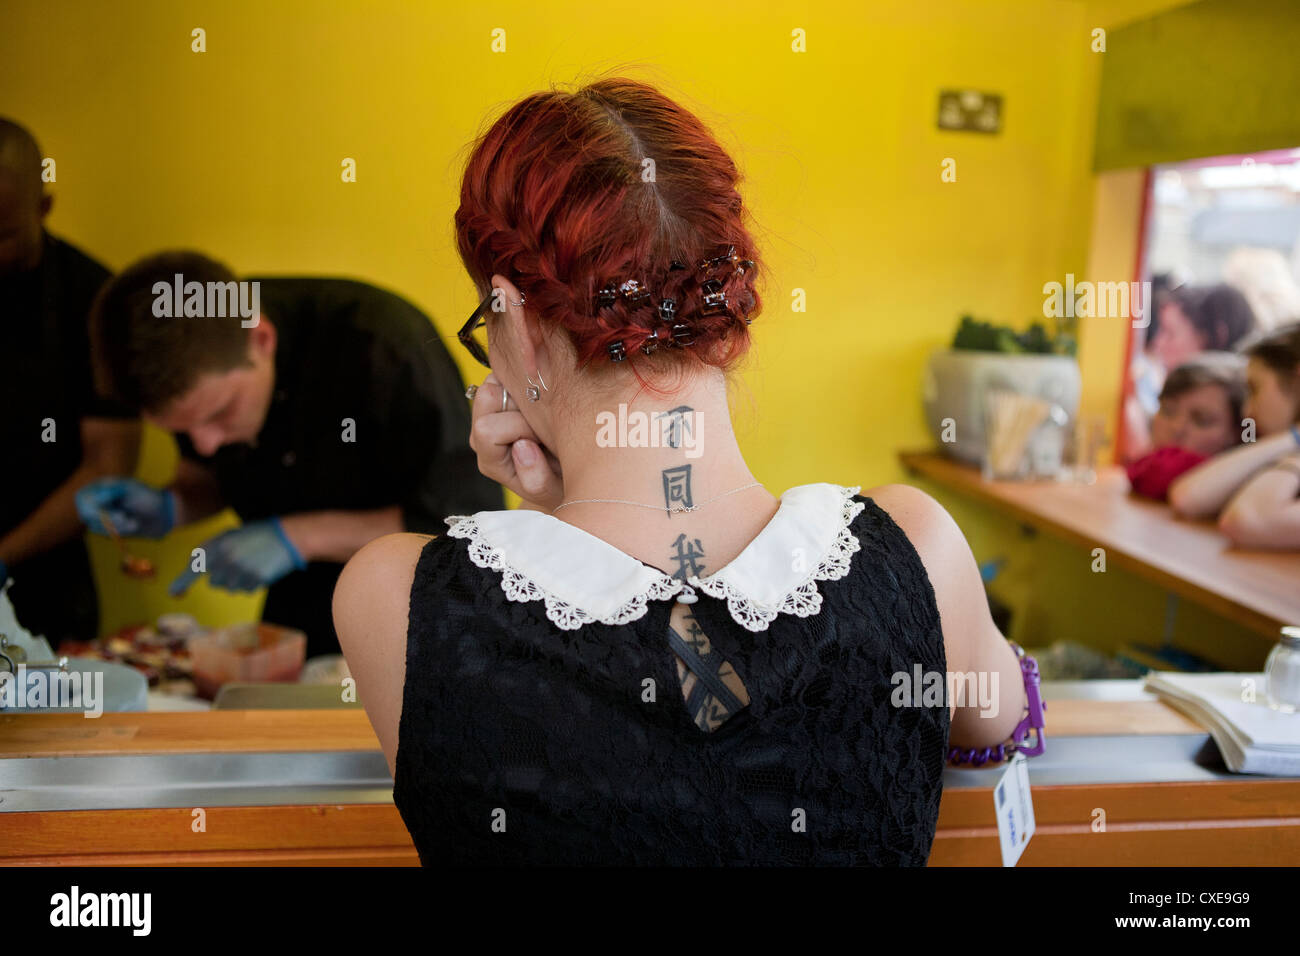 Londres, 22/08/2012, serveuse avec tatouage sur le cou est en attente de servir la nourriture dans un restaurant à Londres, Royaume-Uni Banque D'Images